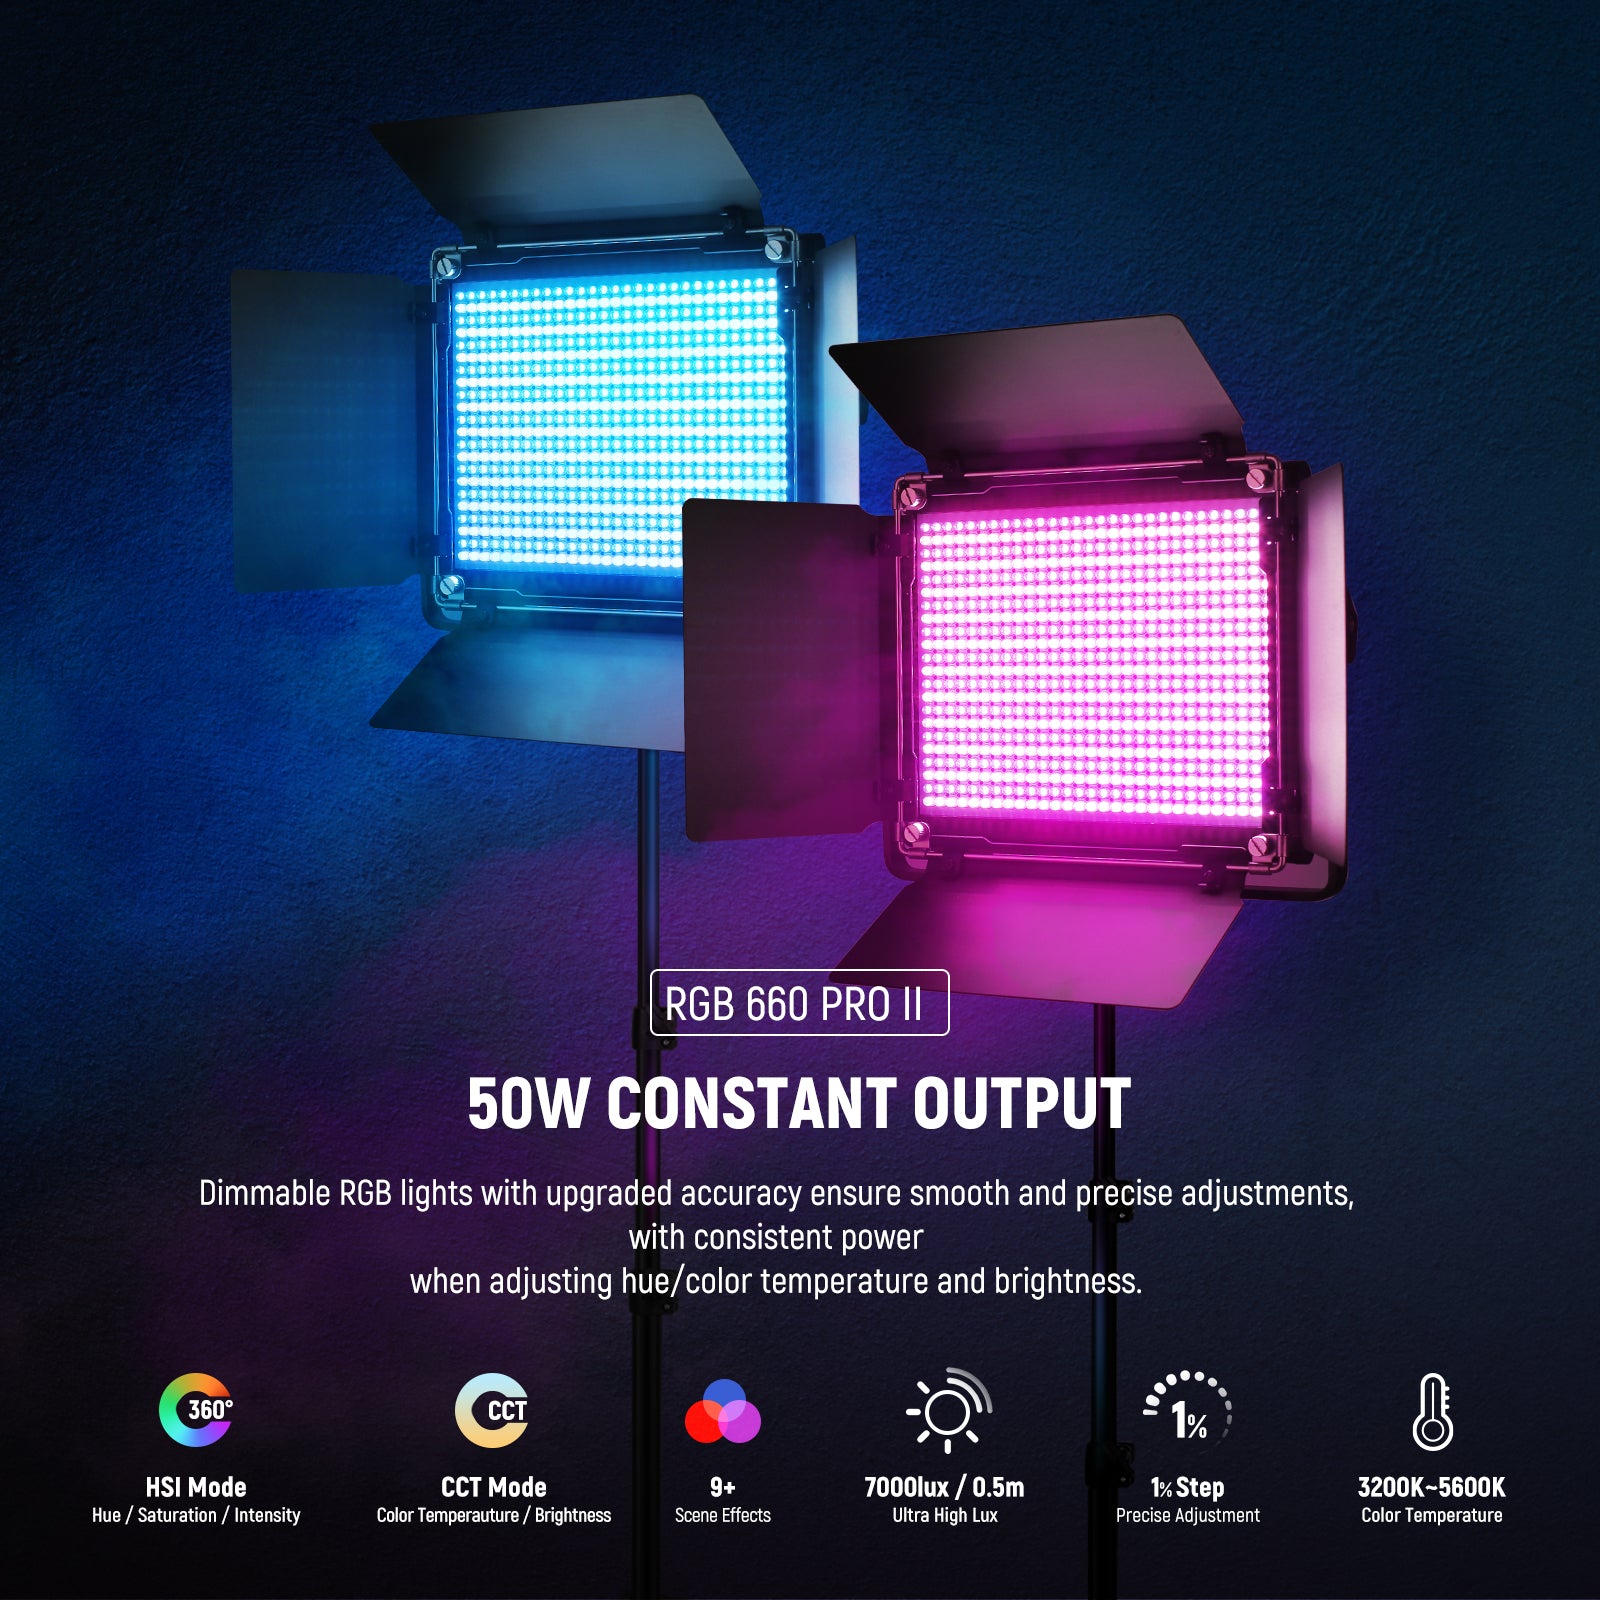 Best Affordable Video Light? – Neewer Upgraded 660 Bi-Color LED